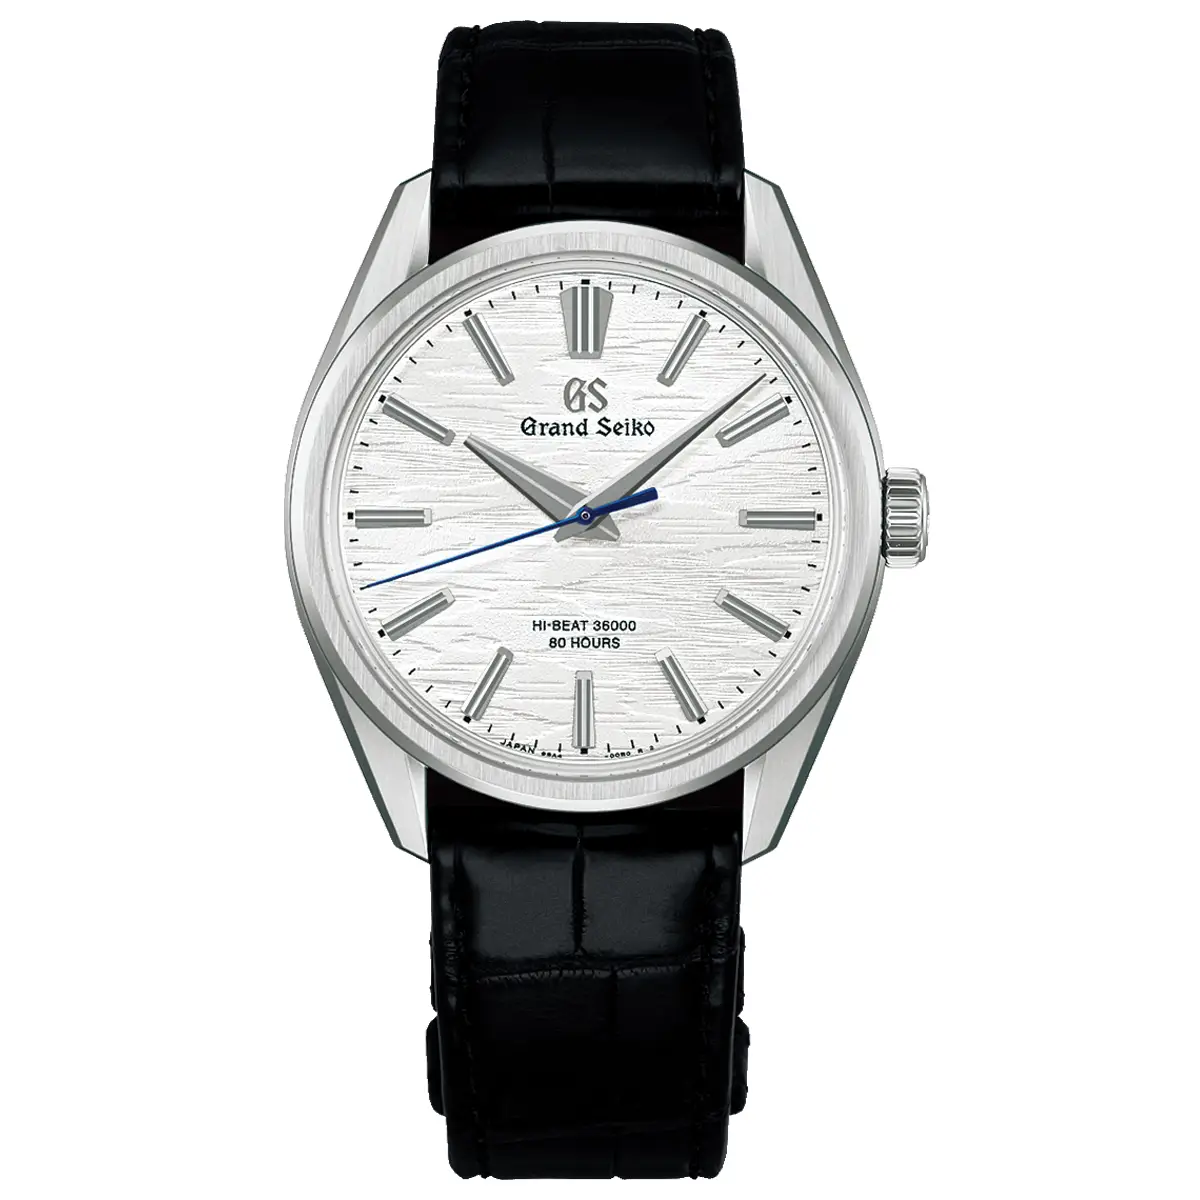 Đồng hồ Grand Seiko Evolution 9 Collection SLGW003 mặt số màu bạc. Dây đeo bằng thép. Thân vỏ bằng titanium.